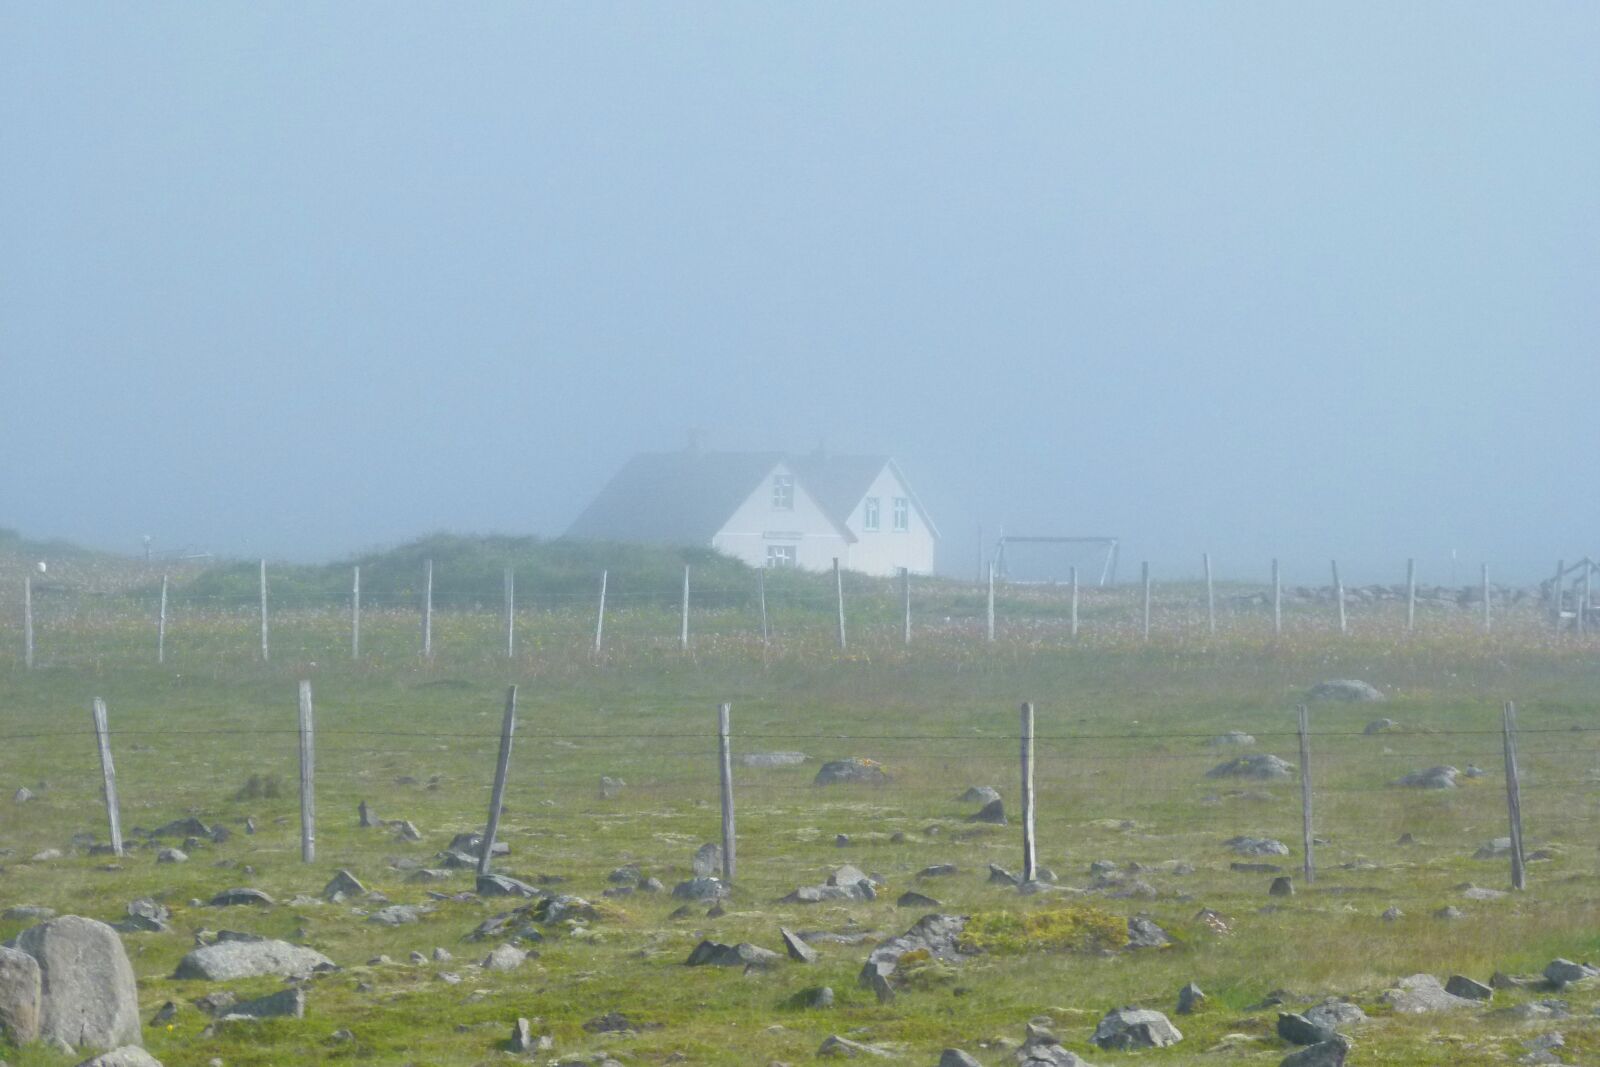 Panasonic Lumix DMC-FZ100 sample photo. Iceland, fog, loneliness photography